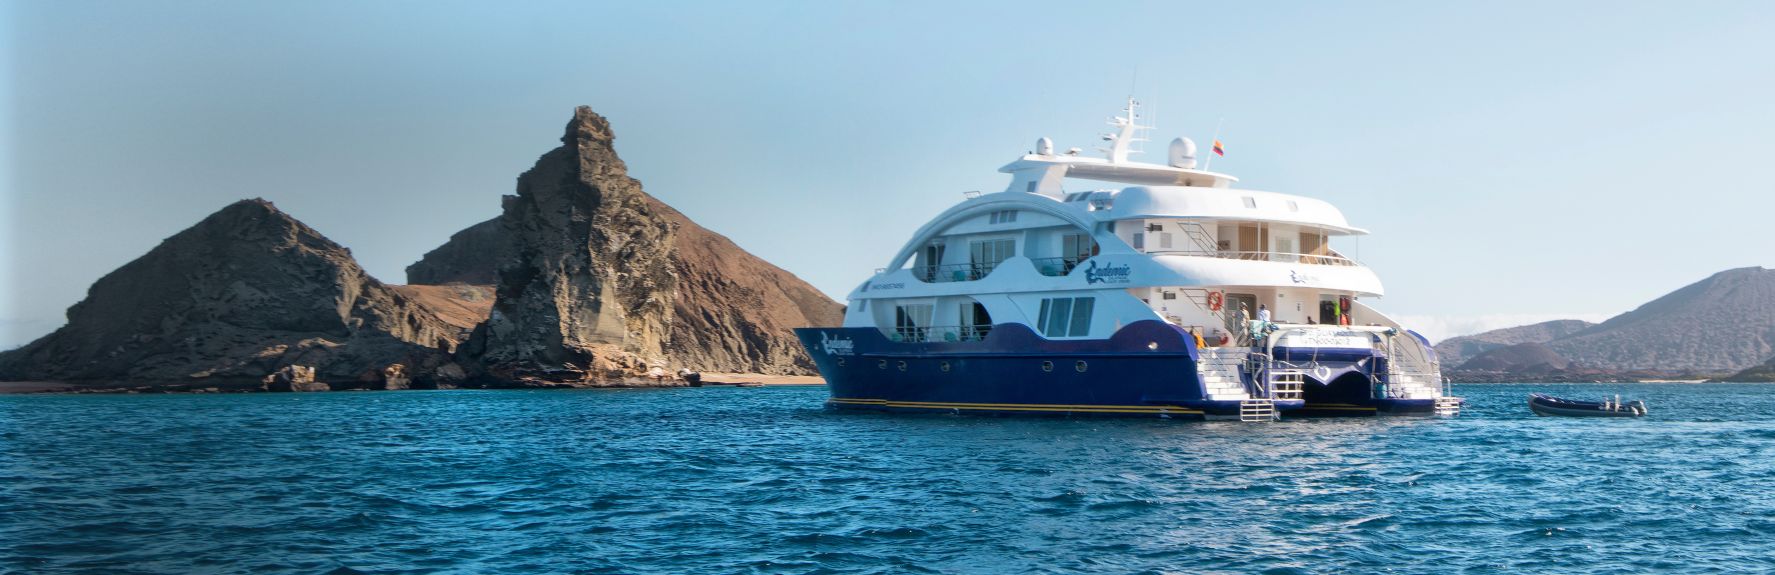 Endemic Galapagos Cruise